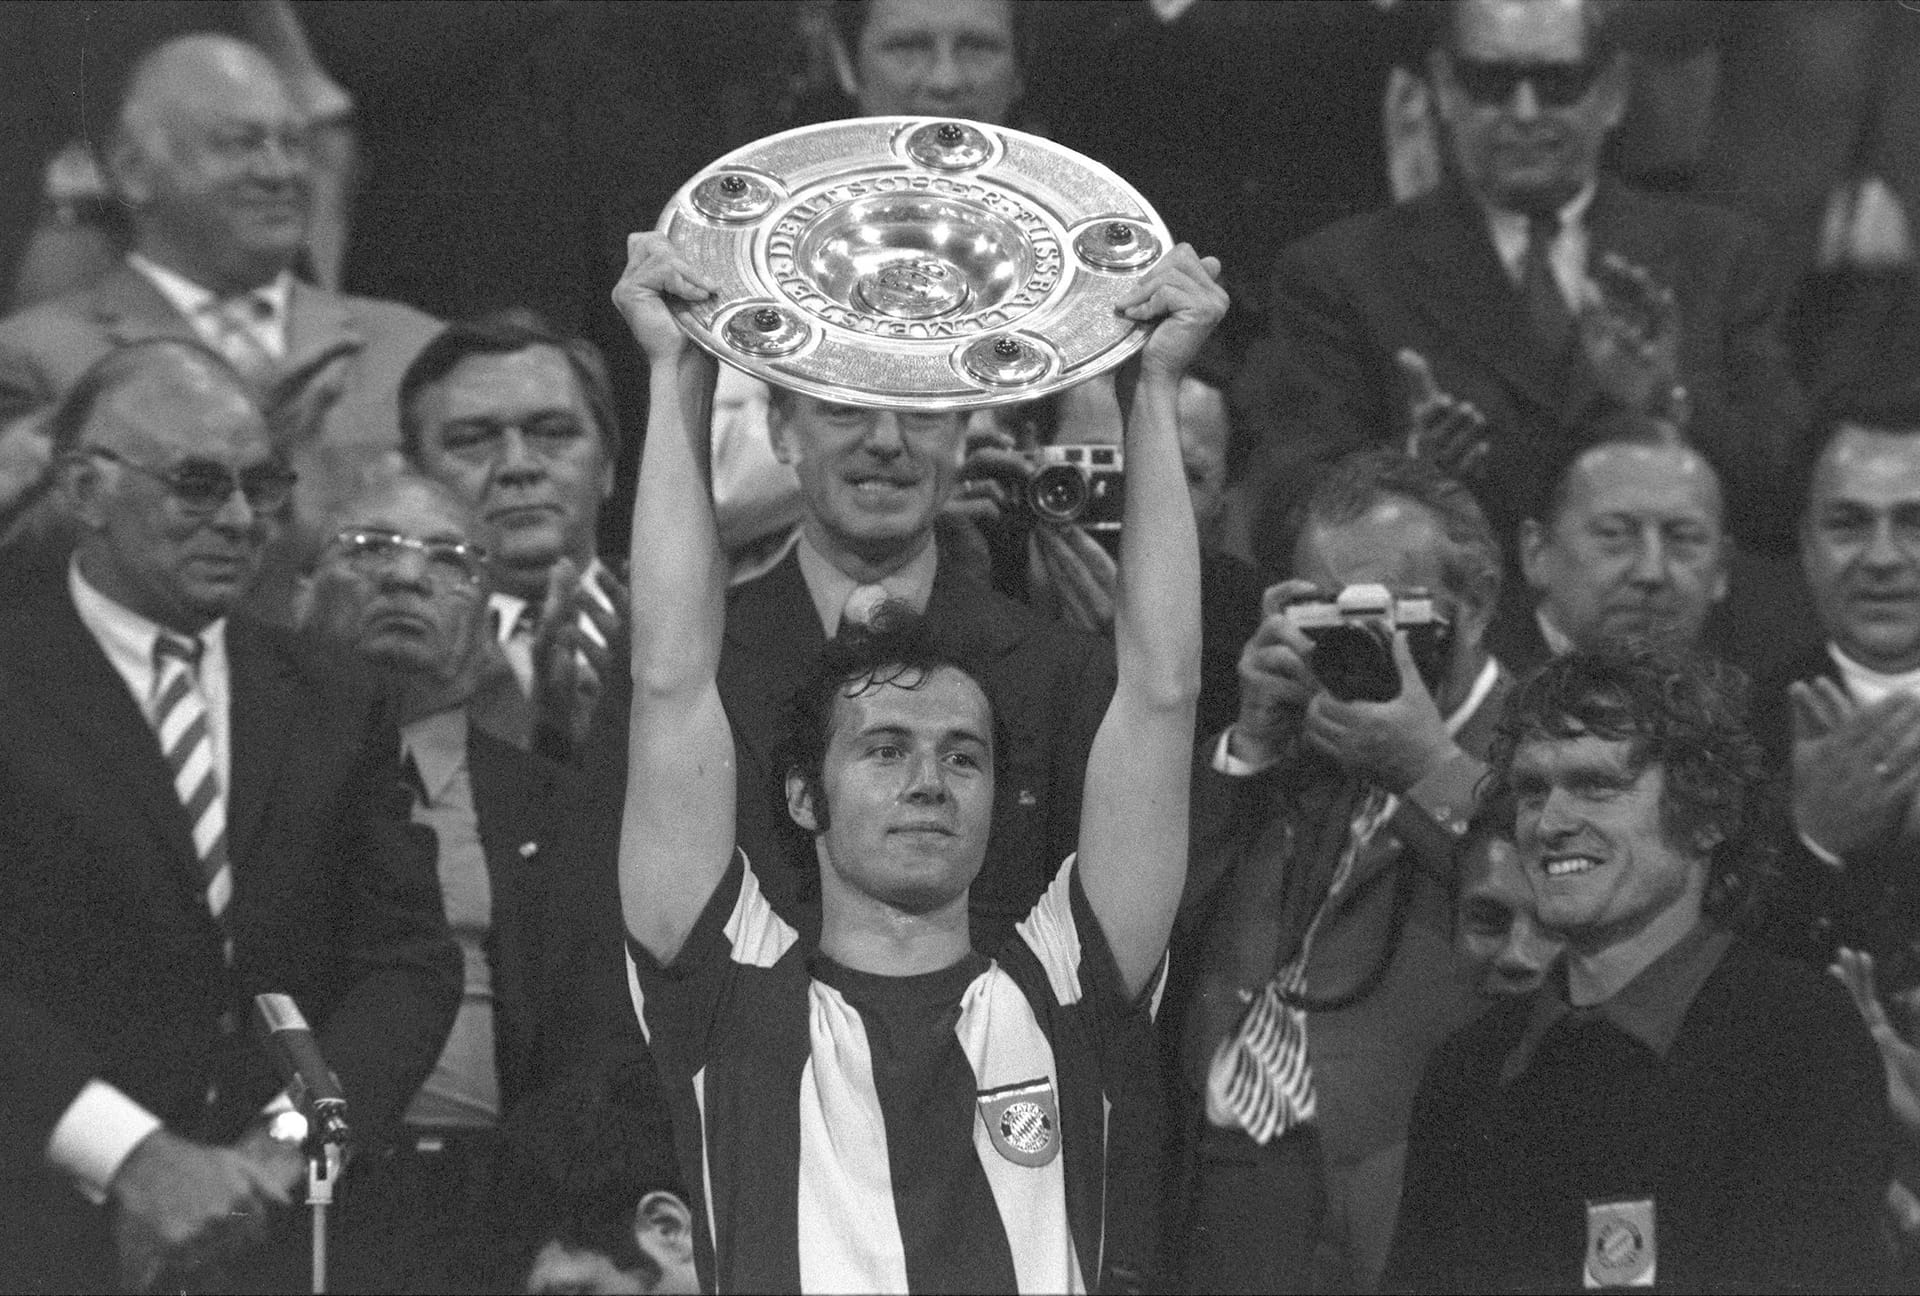 Franz Beckenbauer spielte von 1964 bis 1977 beim FC Bayern und gewann viele Trophäen mit dem Klub.